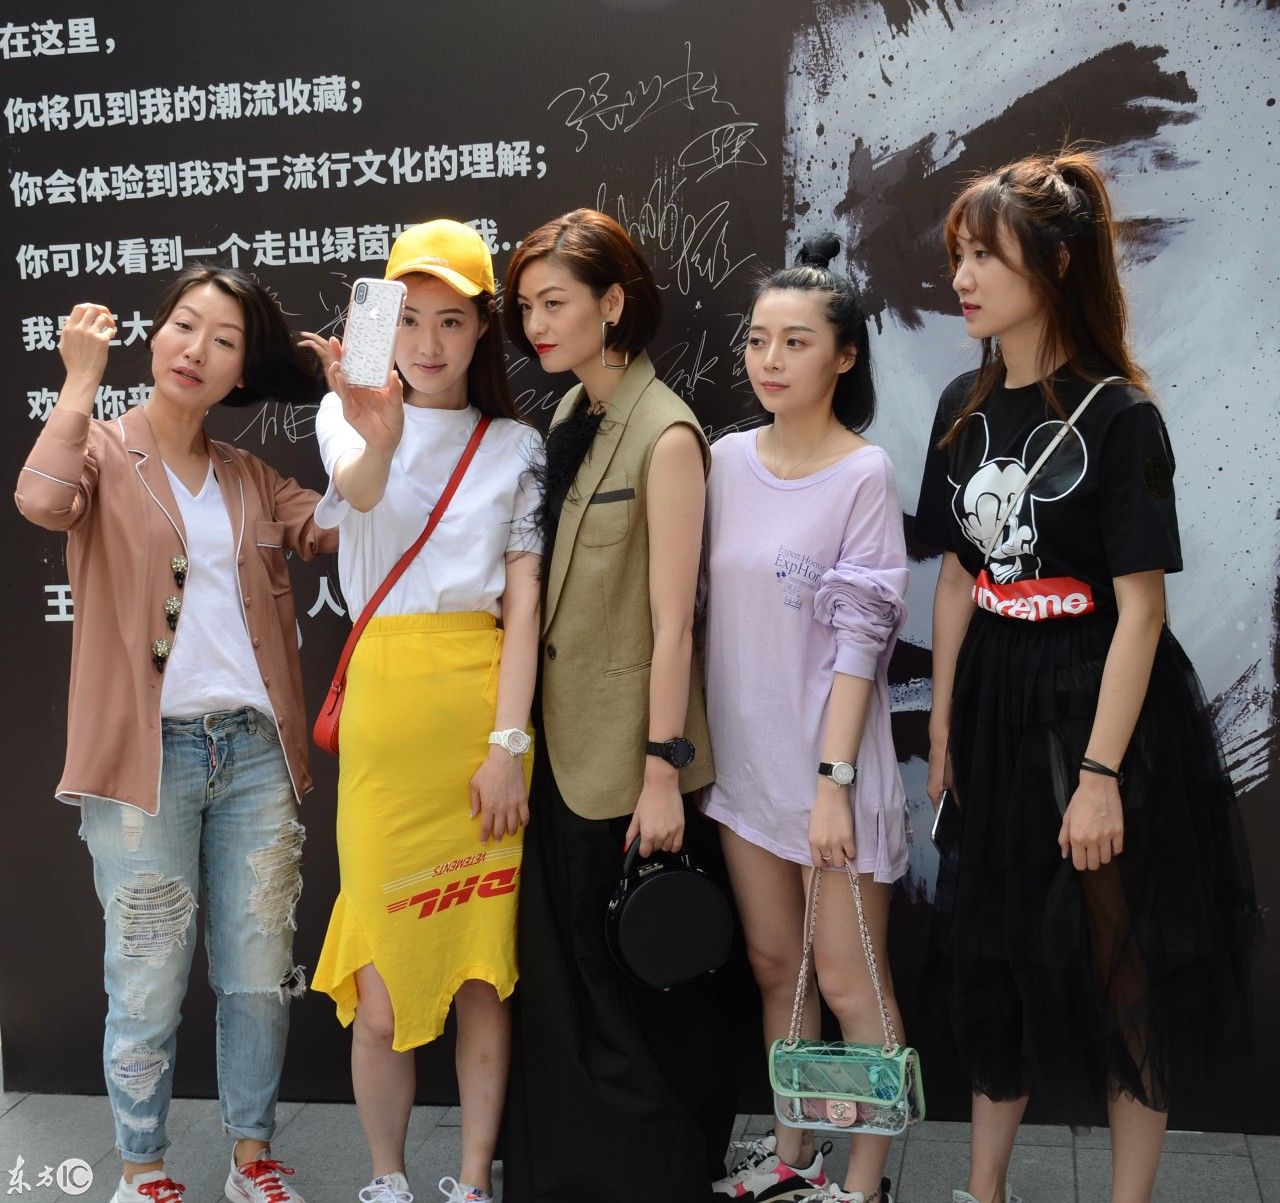 上海:王大雷个人潮流展在念叁潮流店举行